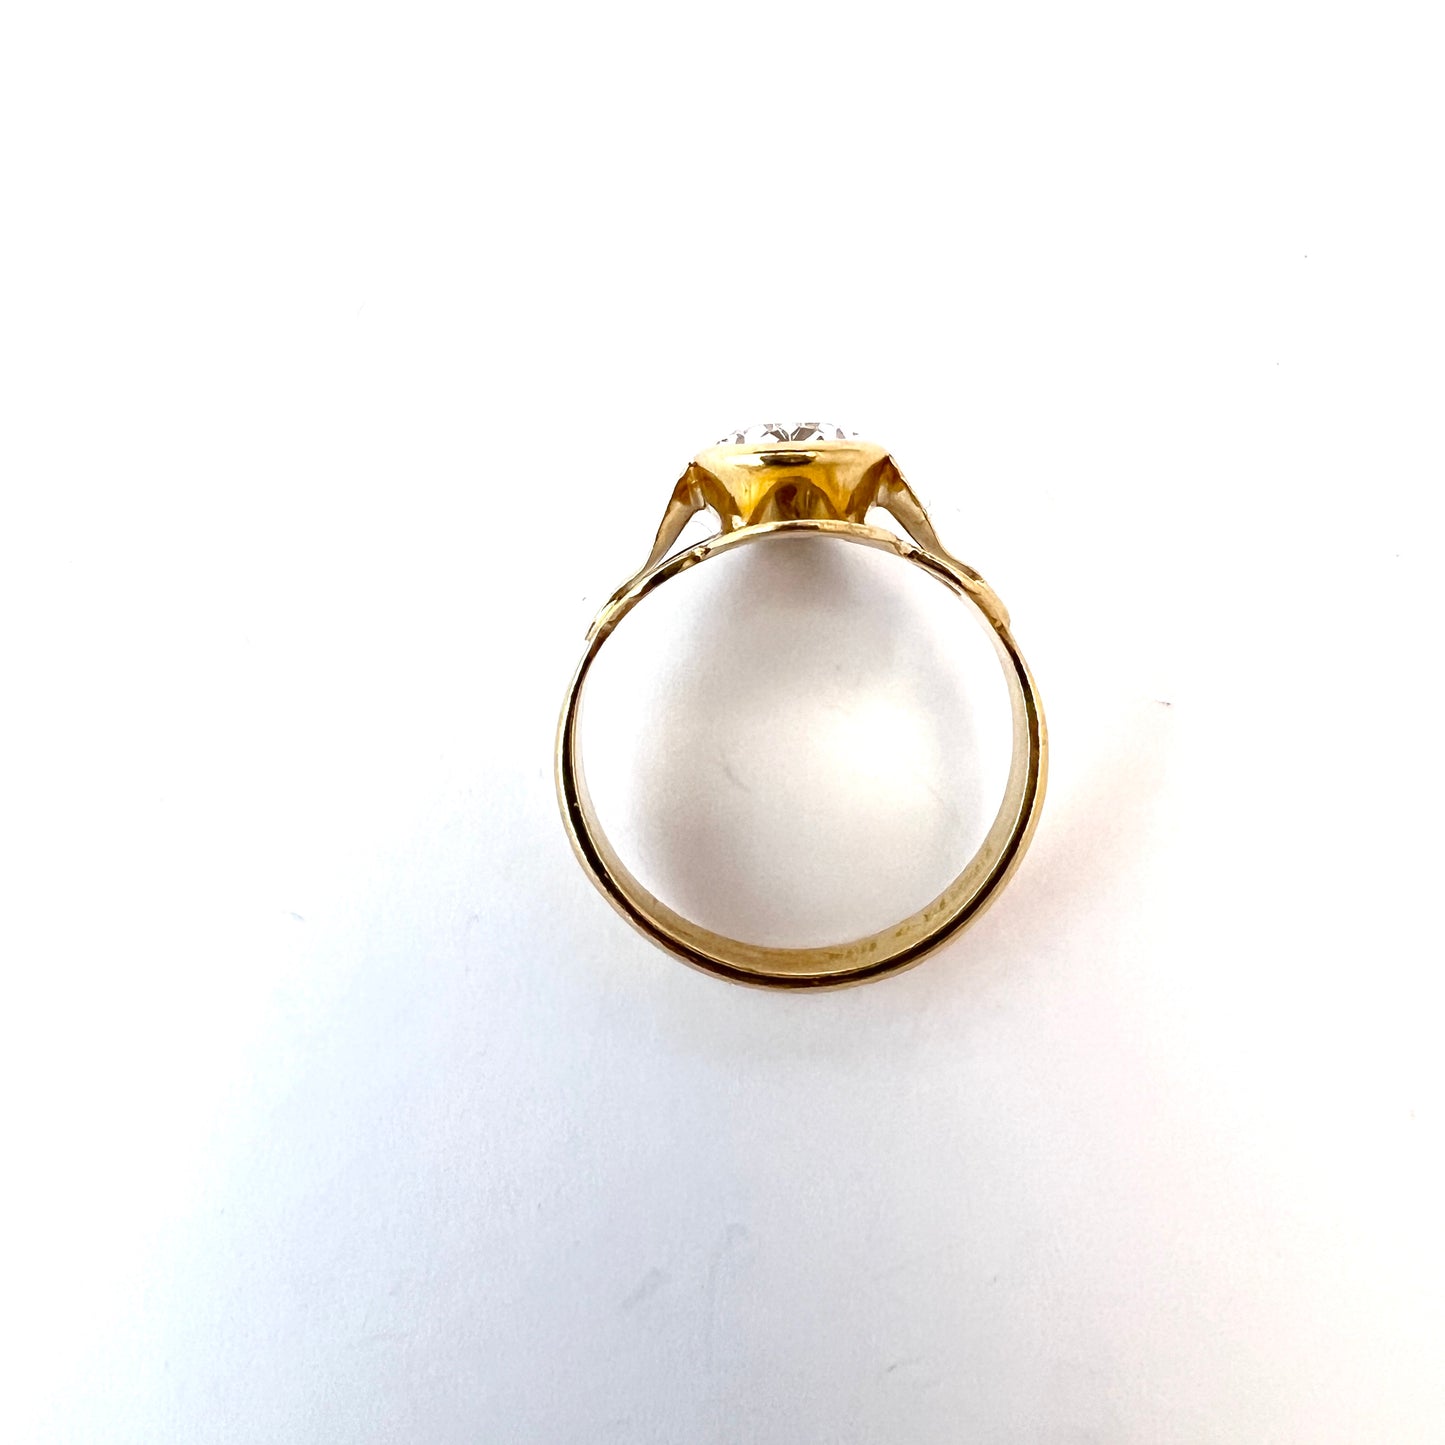 Hedbergs, Sweden 1987. Vintage 18k Gold Rock Crystal Ring.